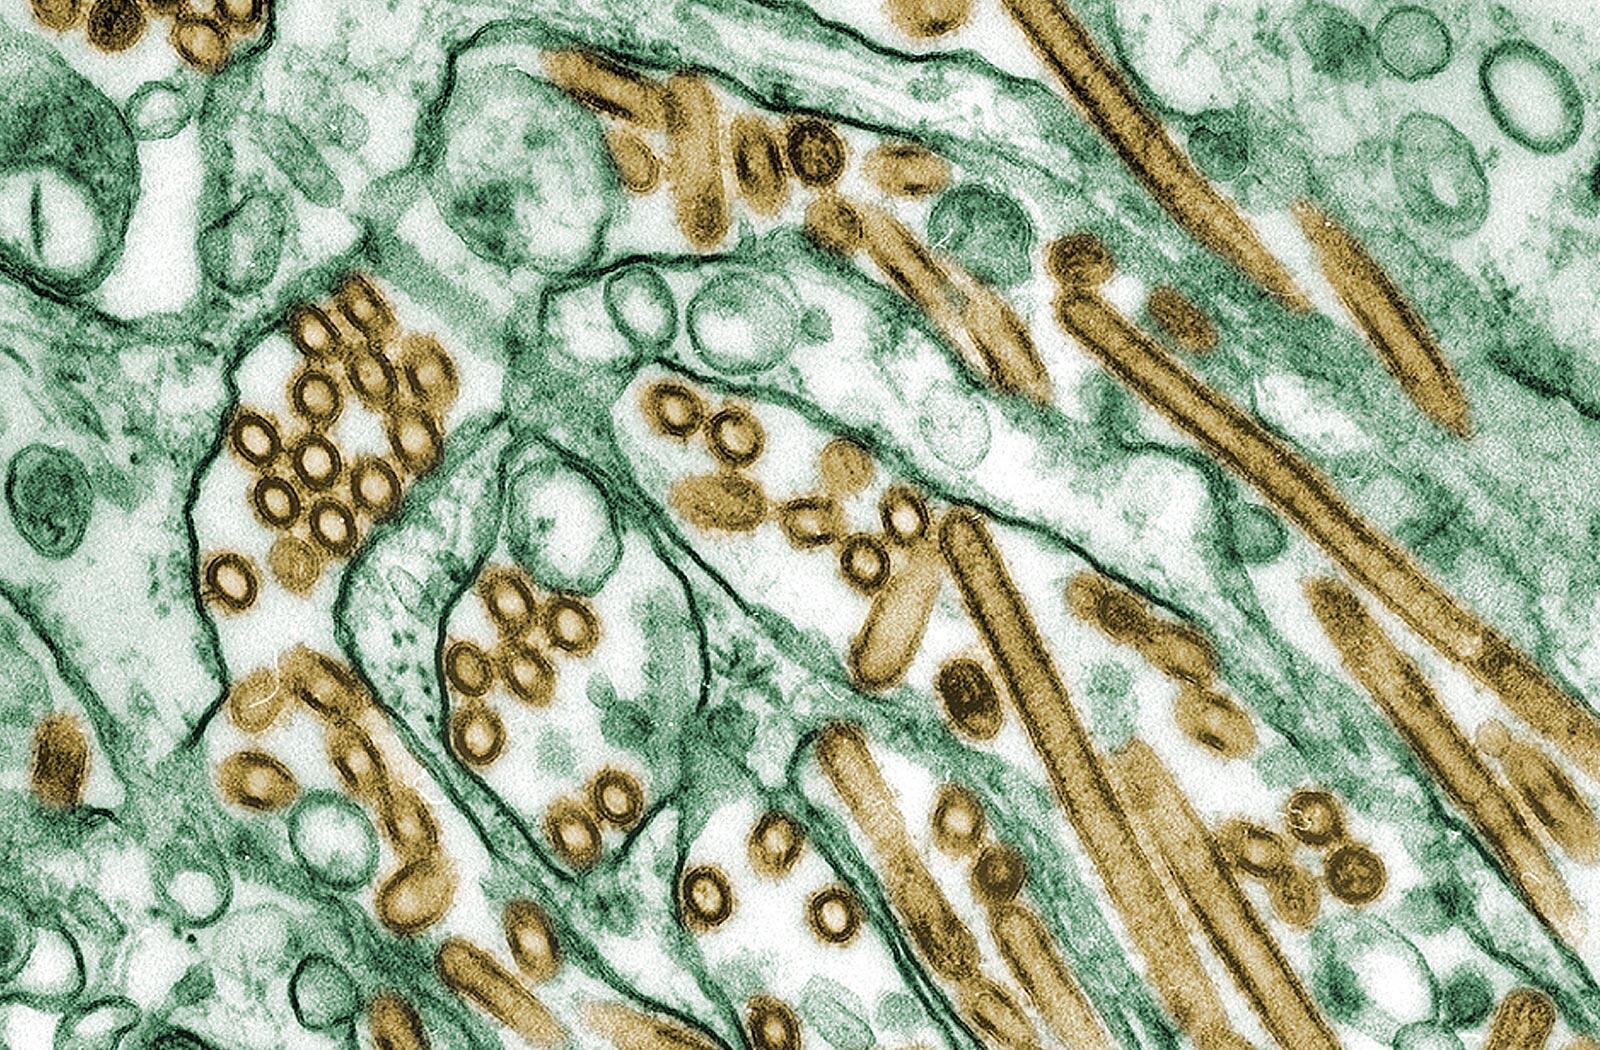 透過型電子顕微鏡で撮影したH5N1亜型鳥インフルエンザウイルスの写真。